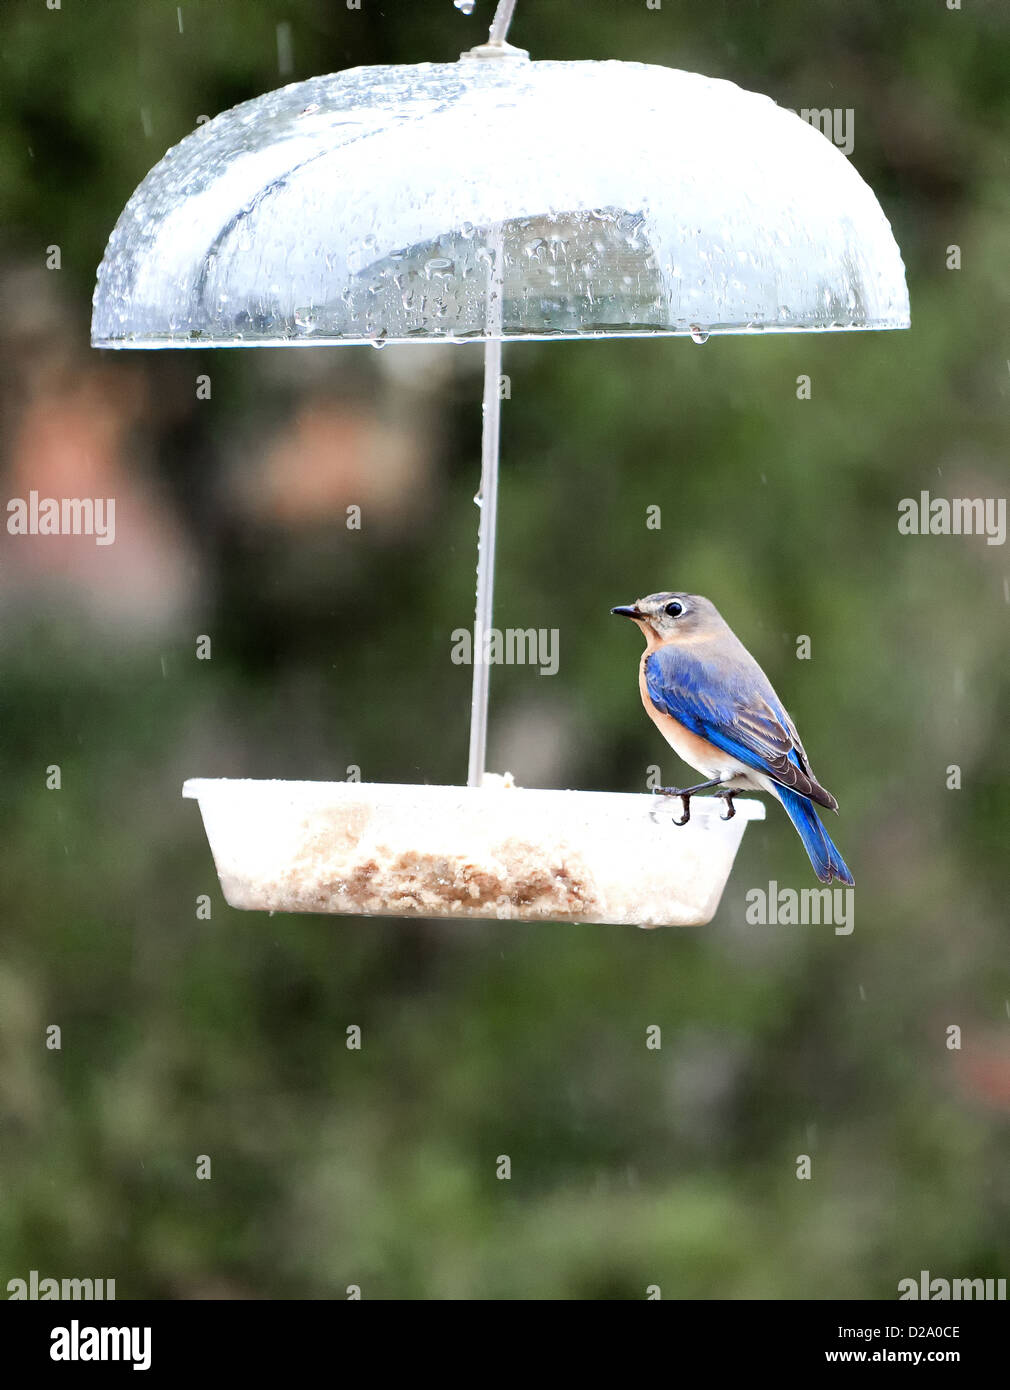 A small blue bird in a feeder Stock Photo